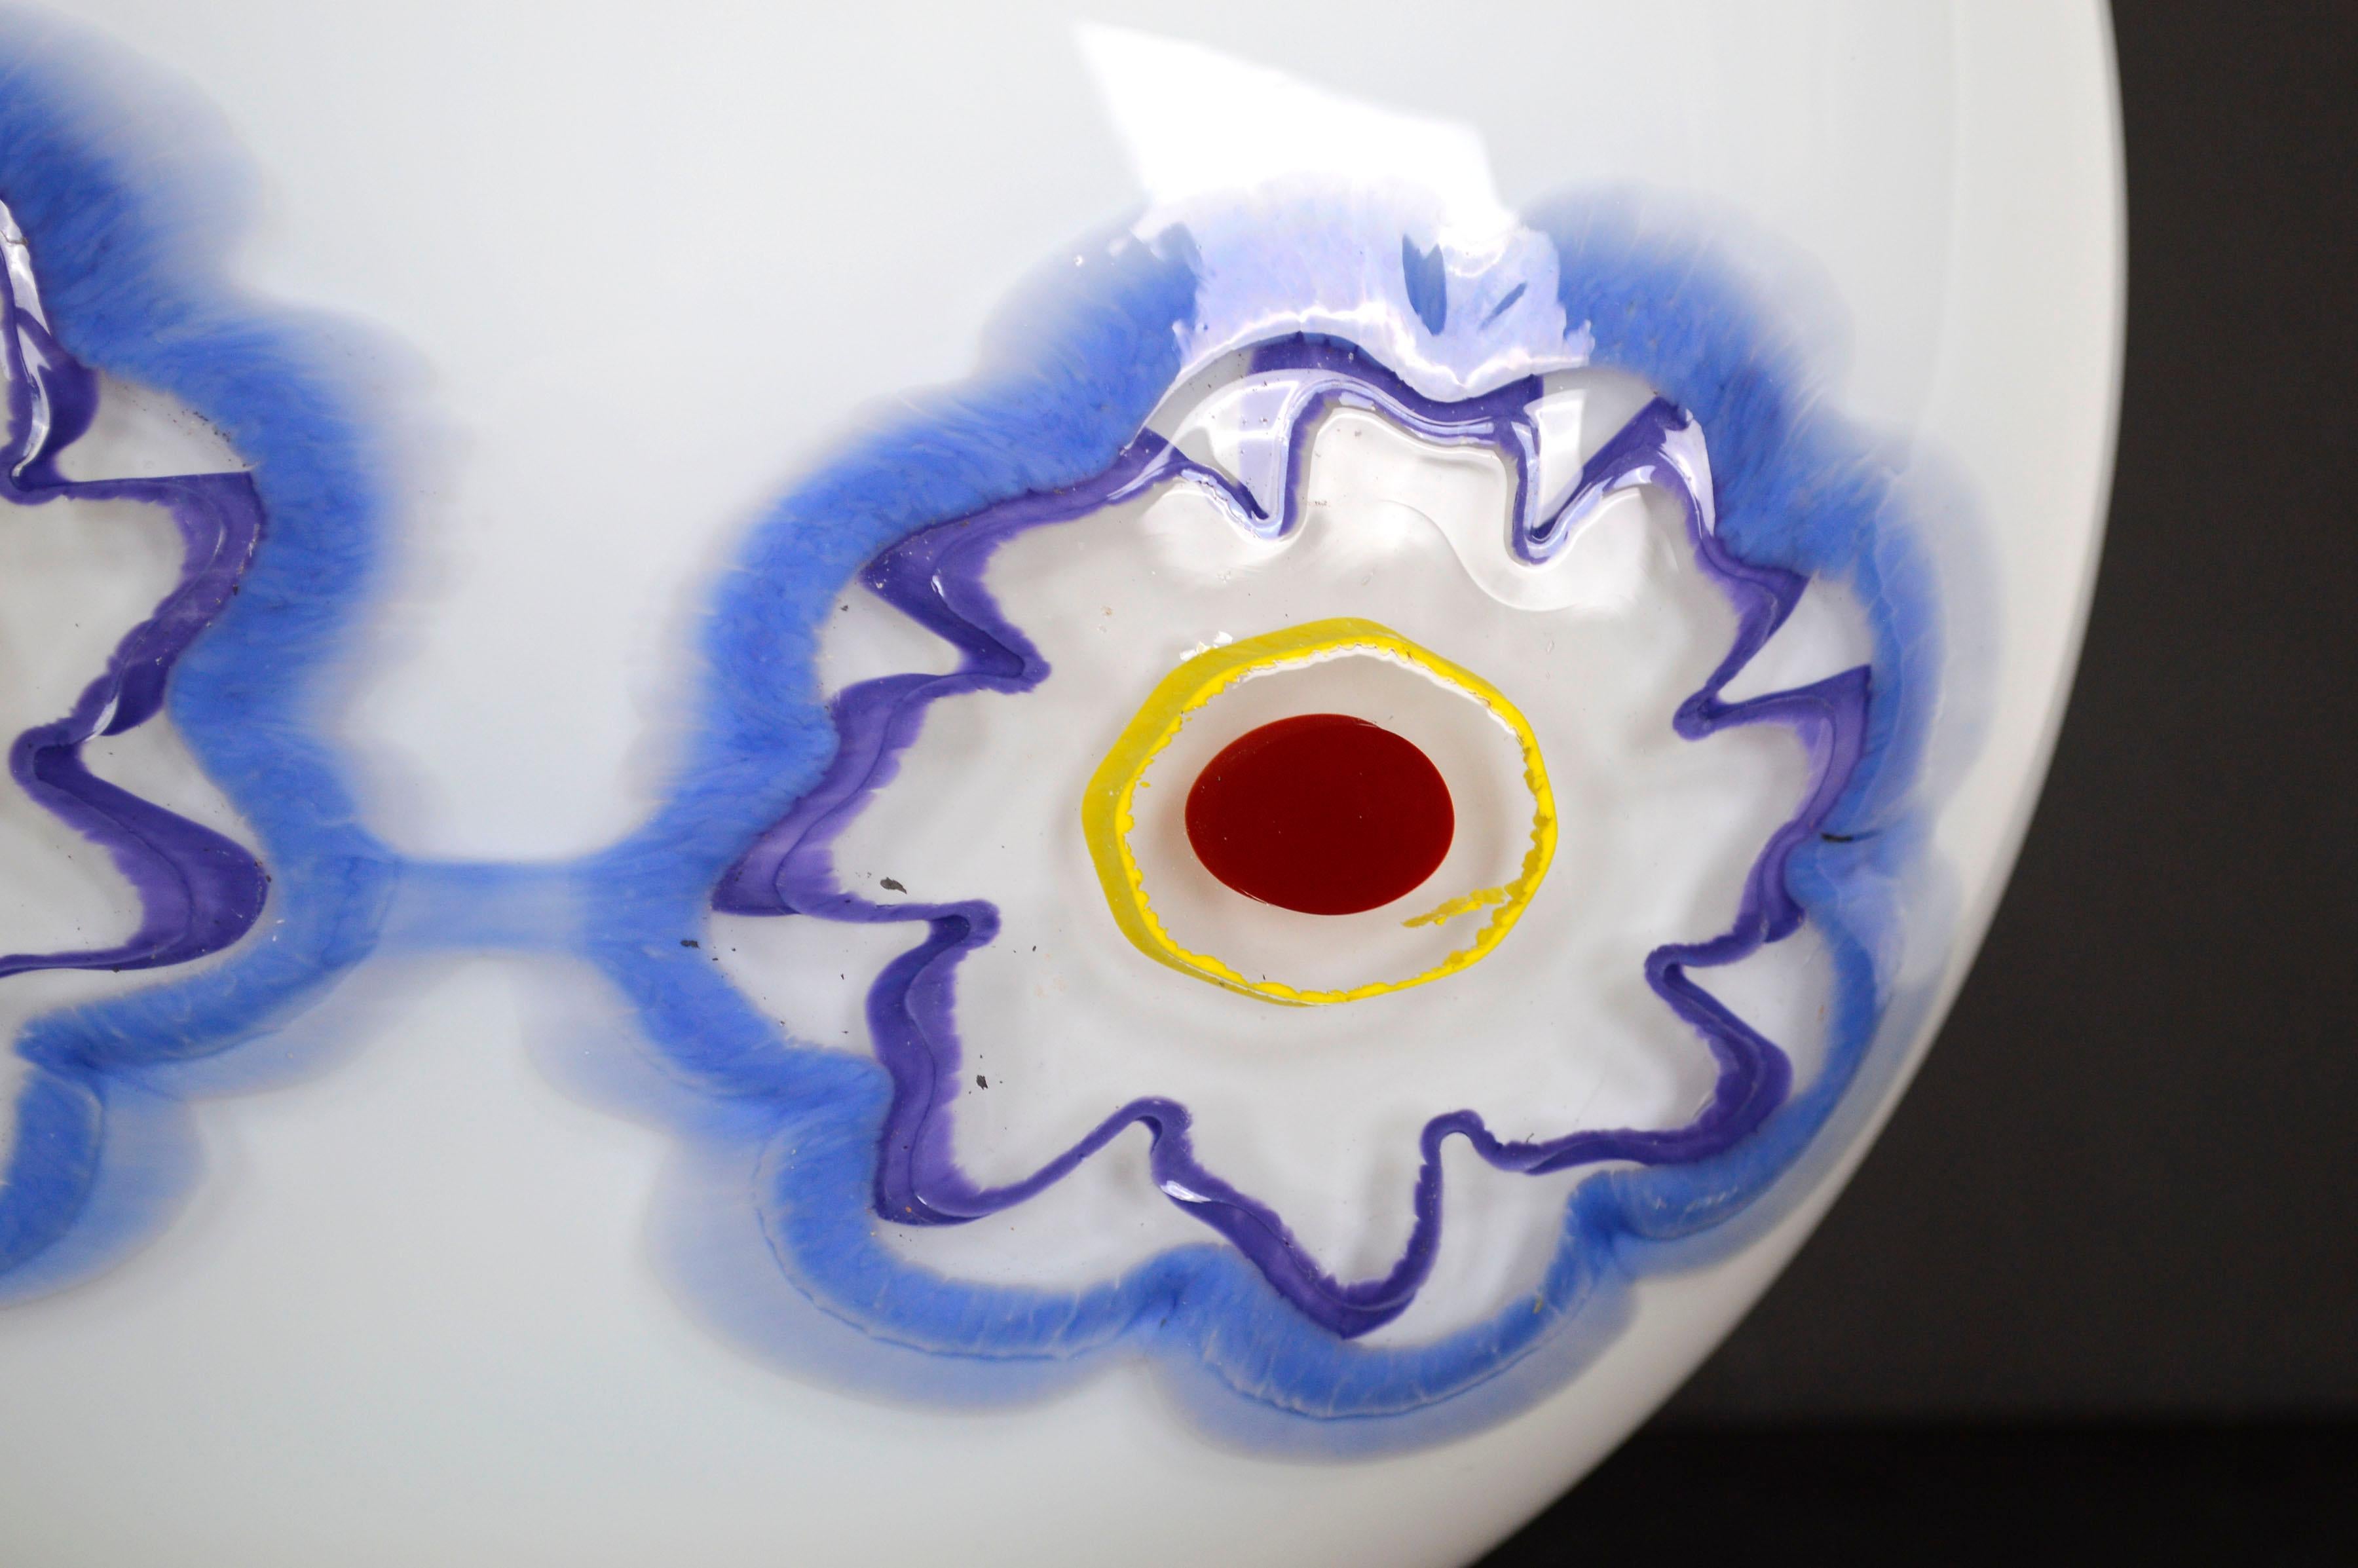 Vase en verre soufflé blanc merveilleusement moderne, avec deux fleurs bleues et un bord rouge, par Nadine Saylor (américaine, 20e siècle), 2005. Signé et daté en bas. État : excellent. Mesure 9,5 